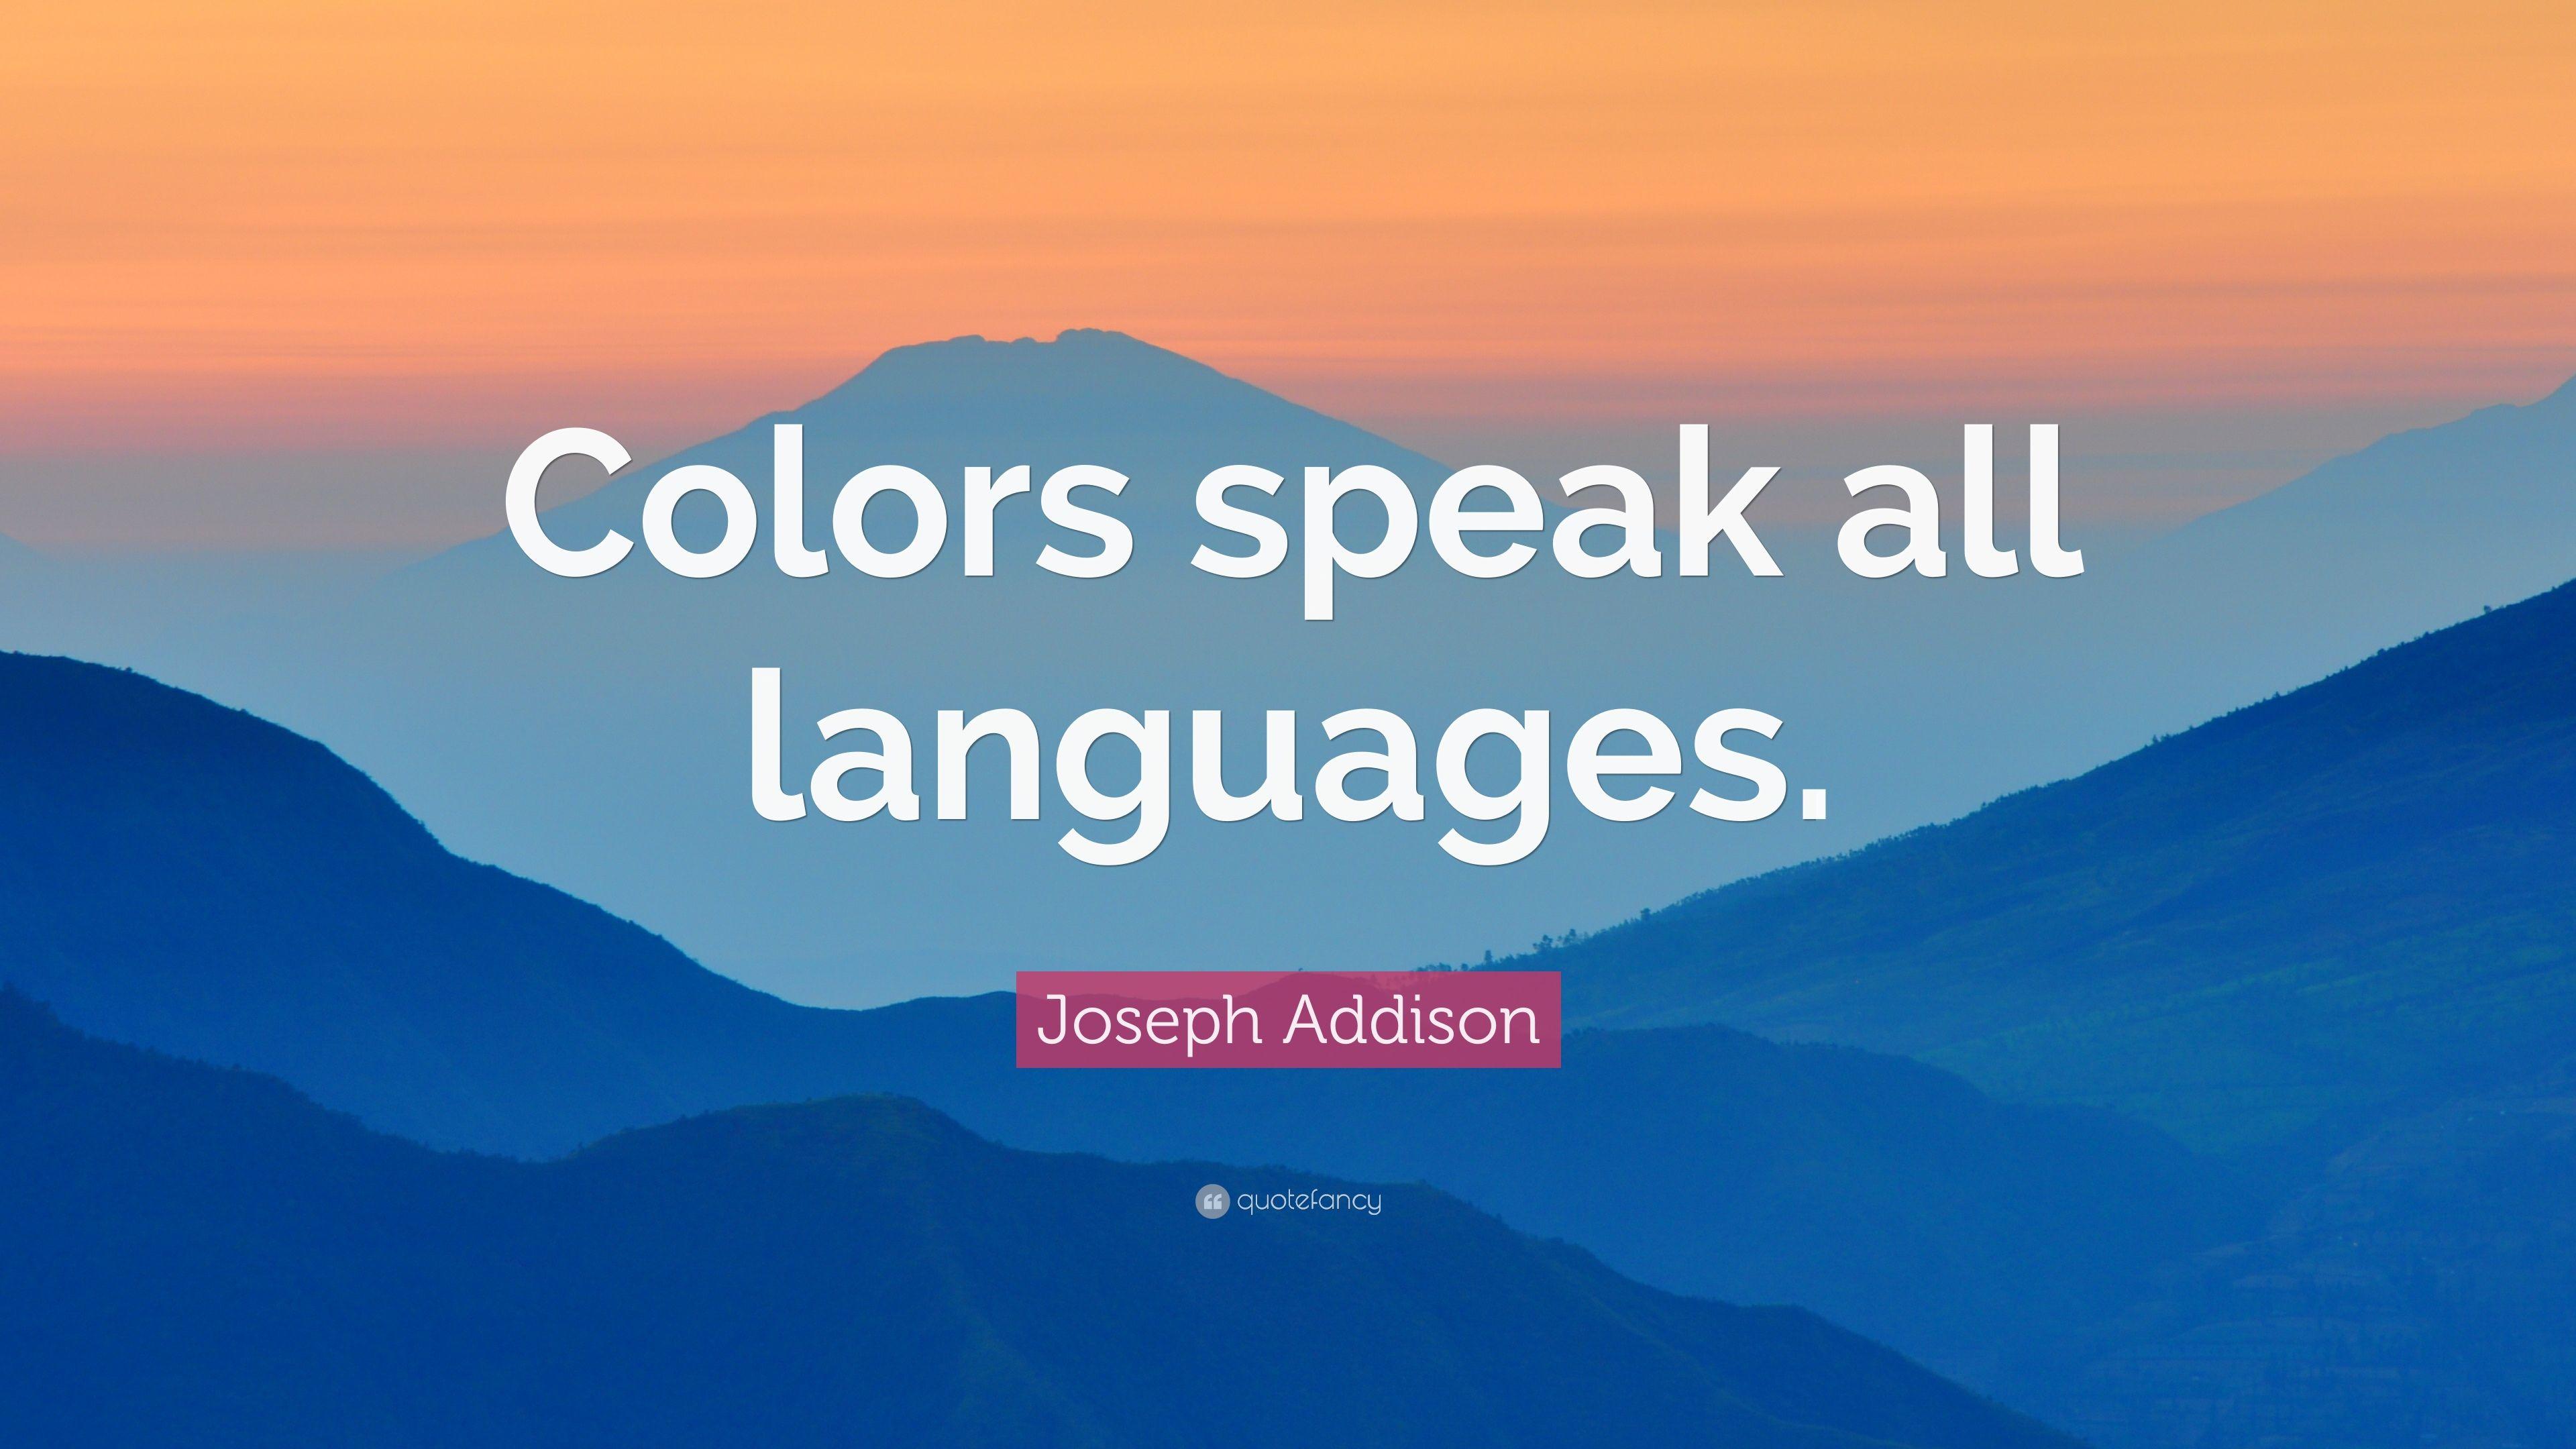 Joseph Addison Quote: “Colors speak all languages.” 7 wallpaper